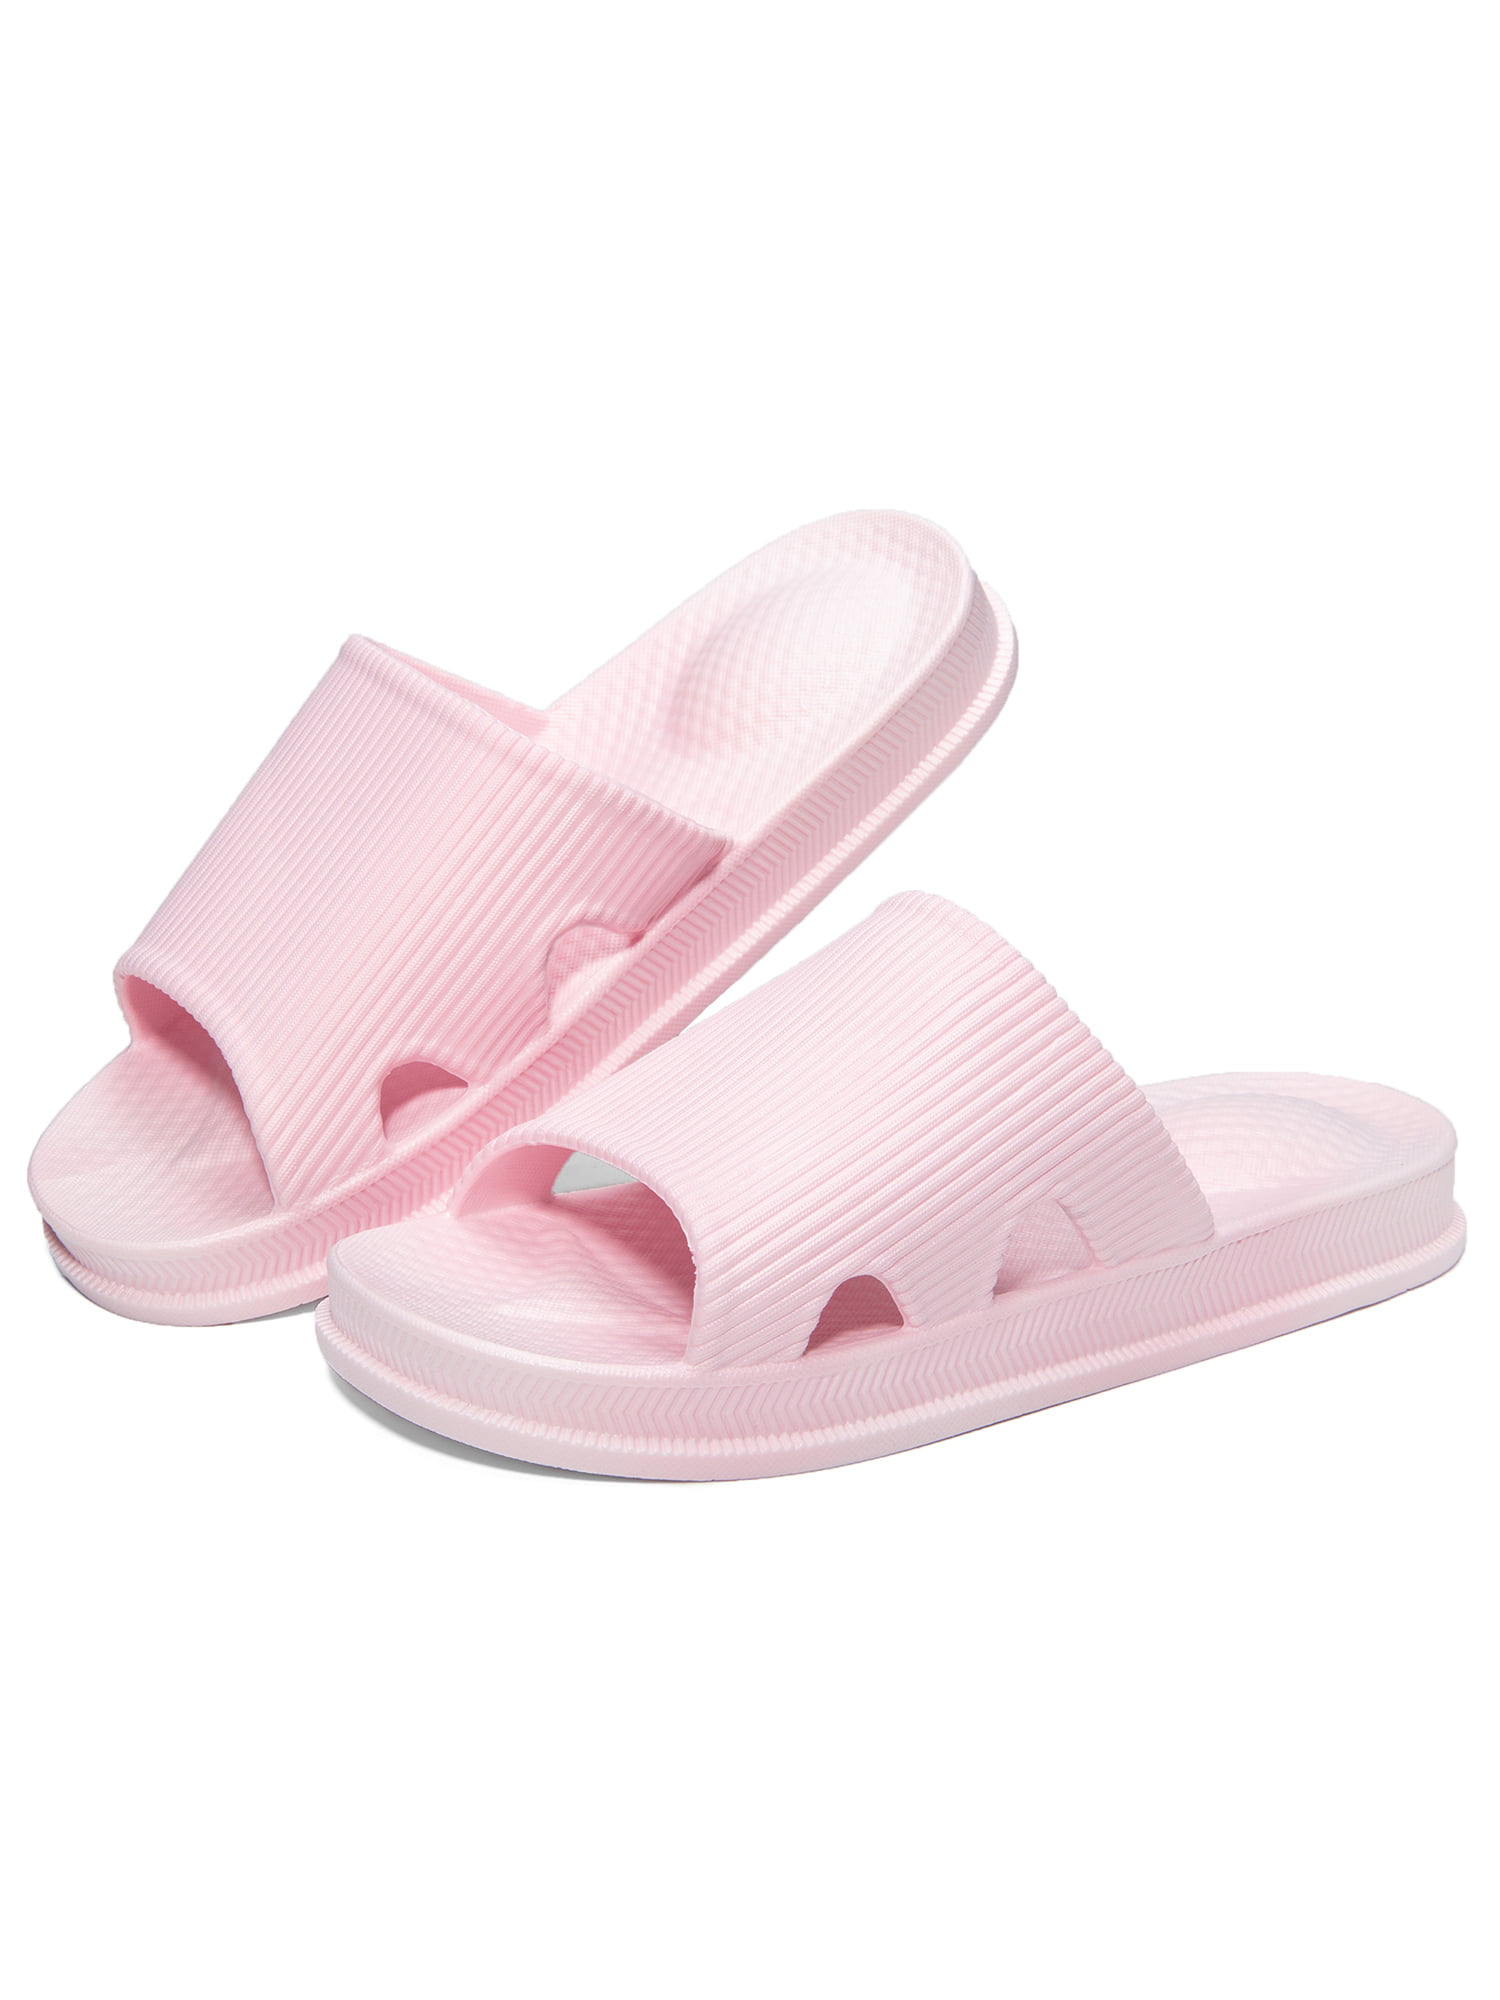 HEVA Bathroom Slippers Mens Slide Shower Open Toe Sandals Womens Non Slip Beach Indoor House Shoes 